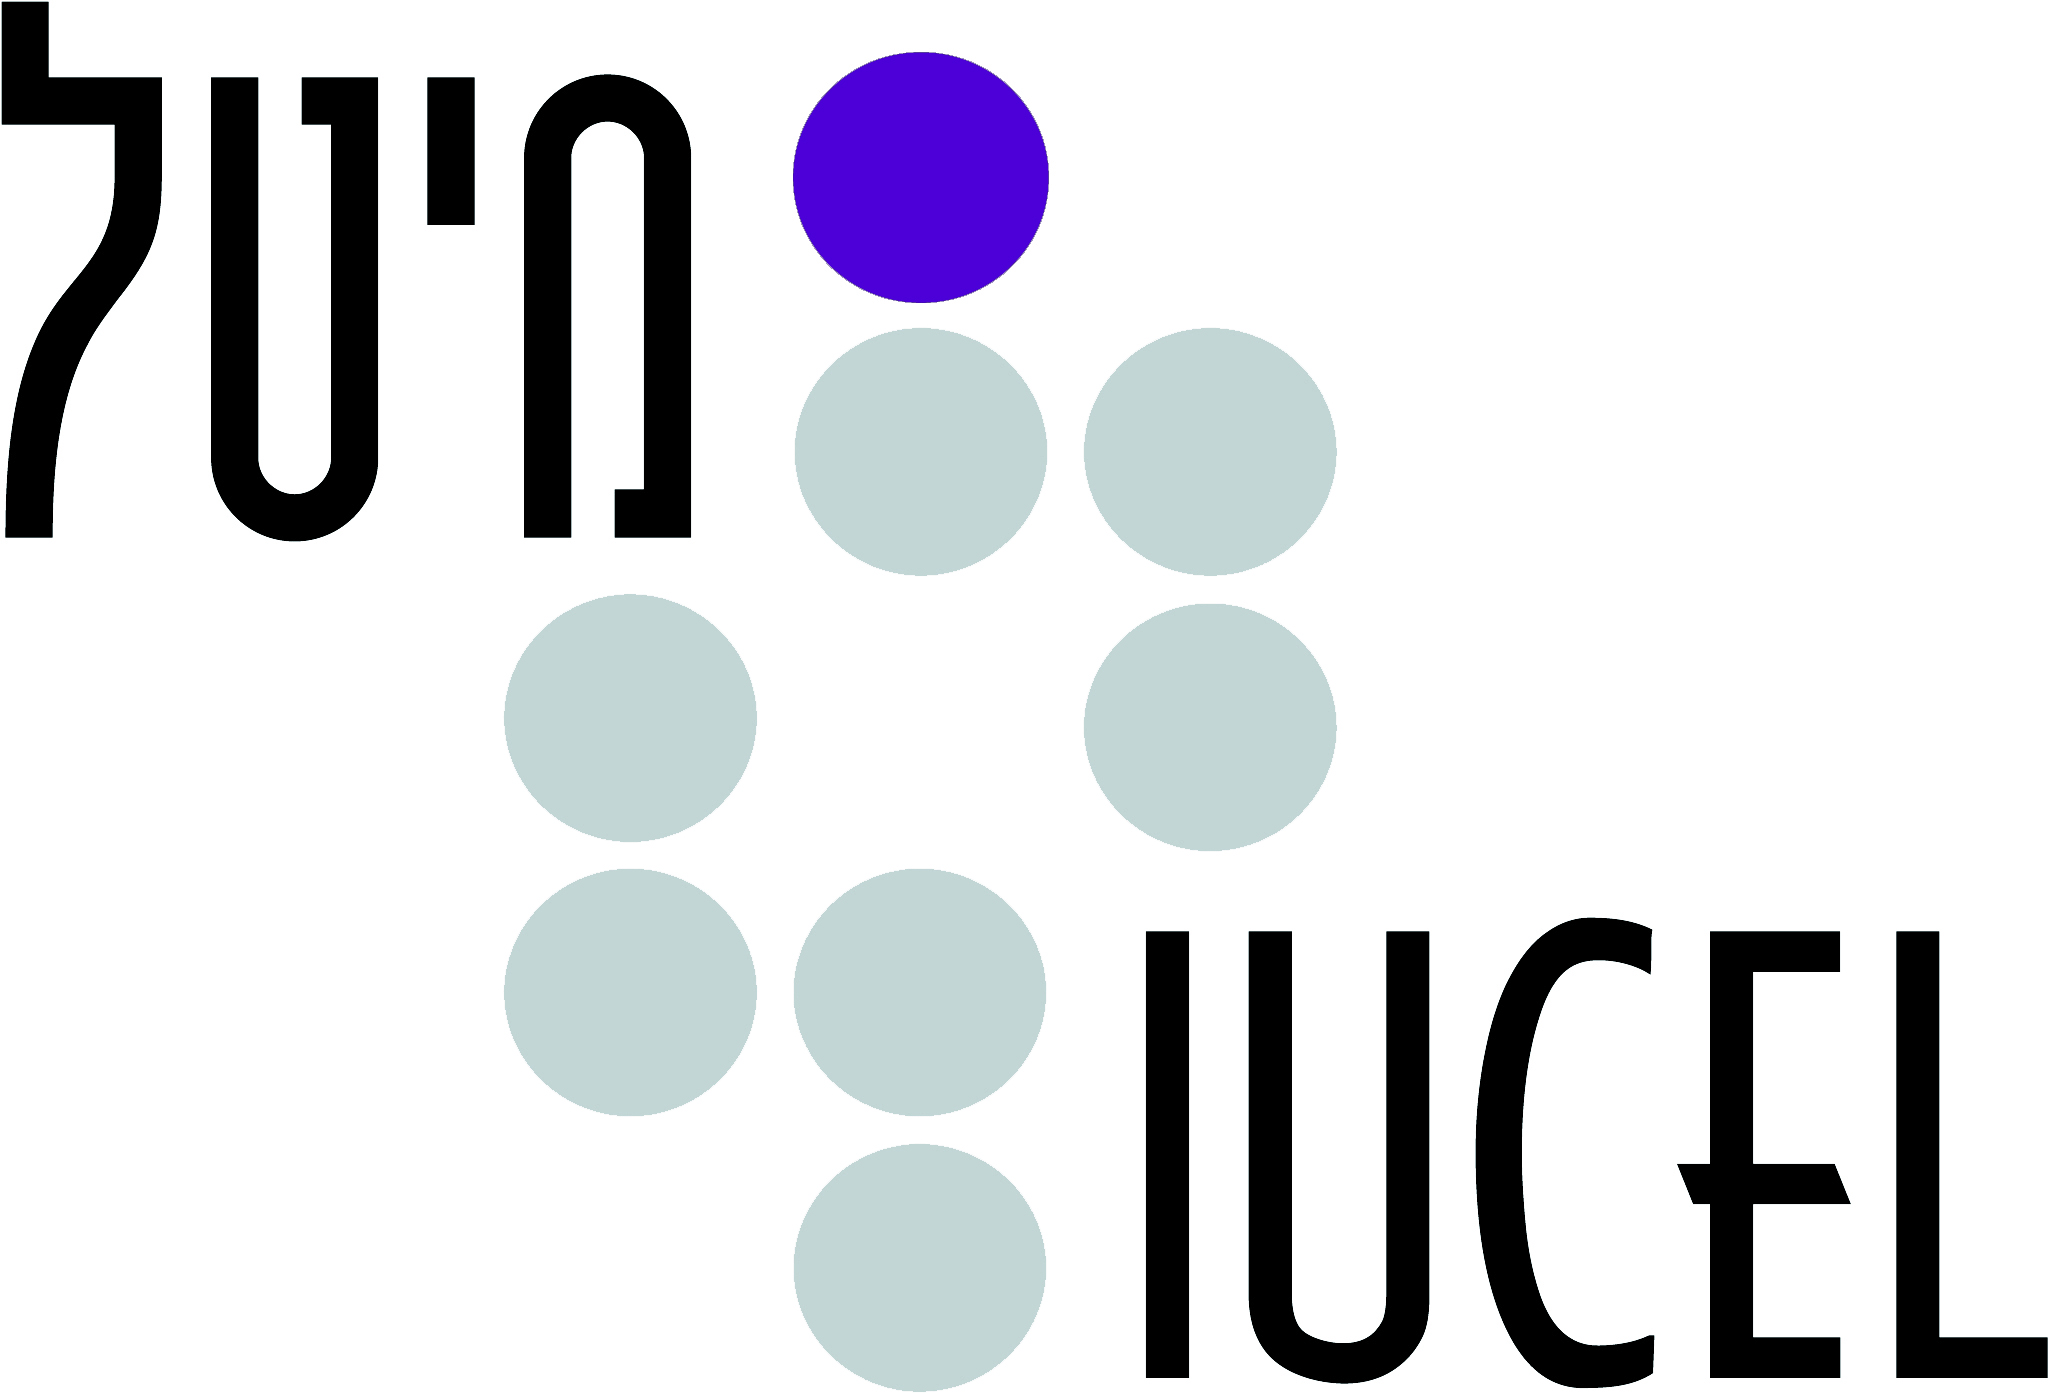 Inter-University Center for e-Learning (IUCEL)